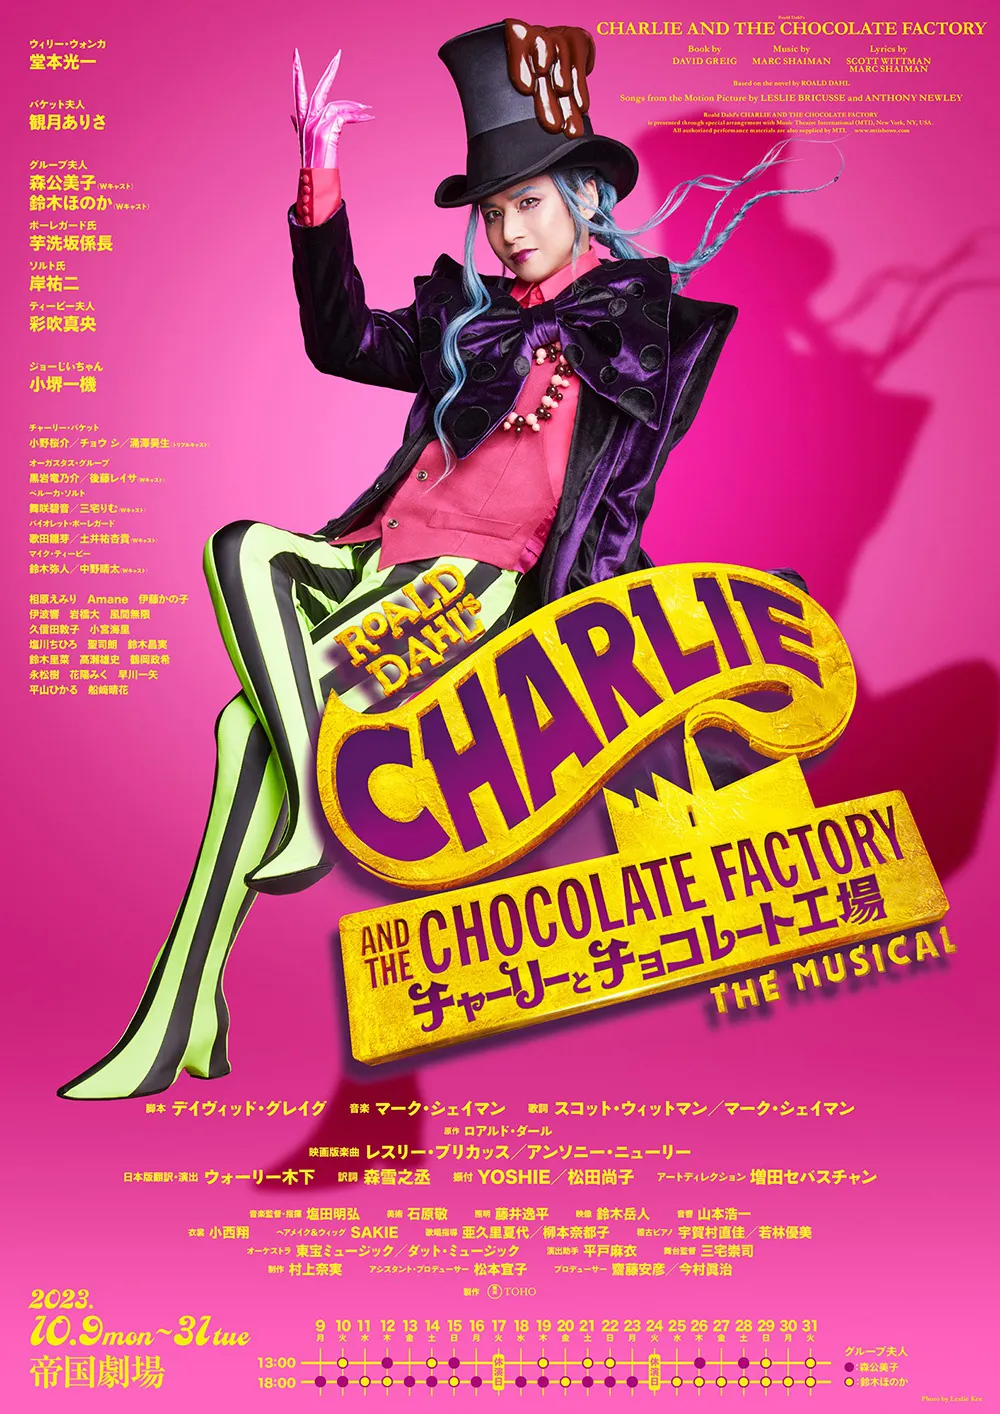 解禁された「チャーリーとチョコレート工場」ポスタービジュアル